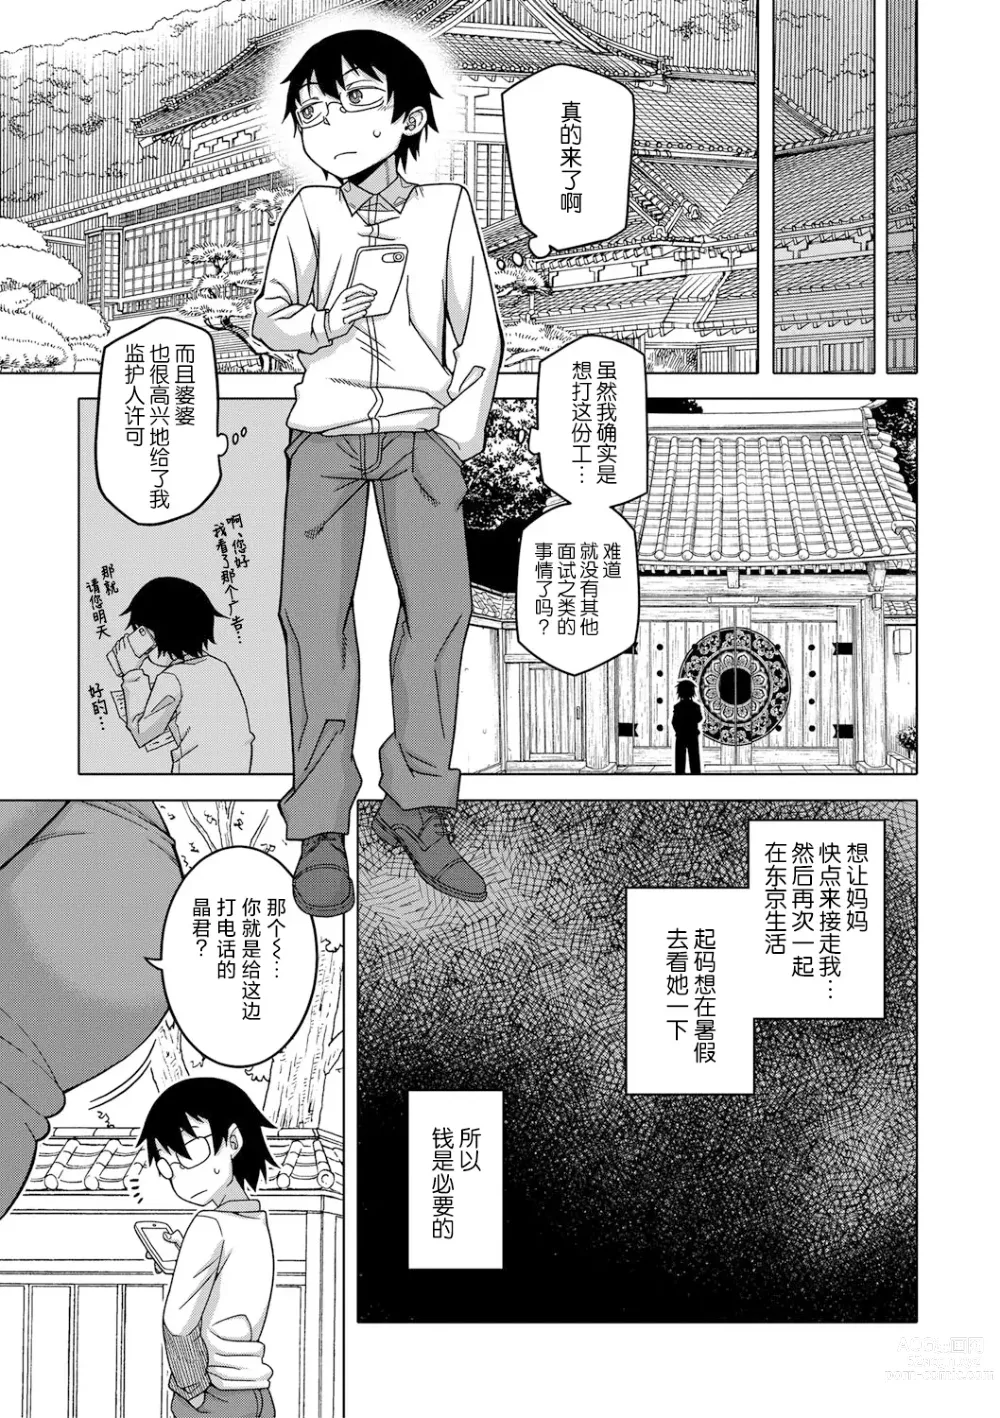 Page 6 of manga Kami-sama no Tsukurikata Ch. 1-5